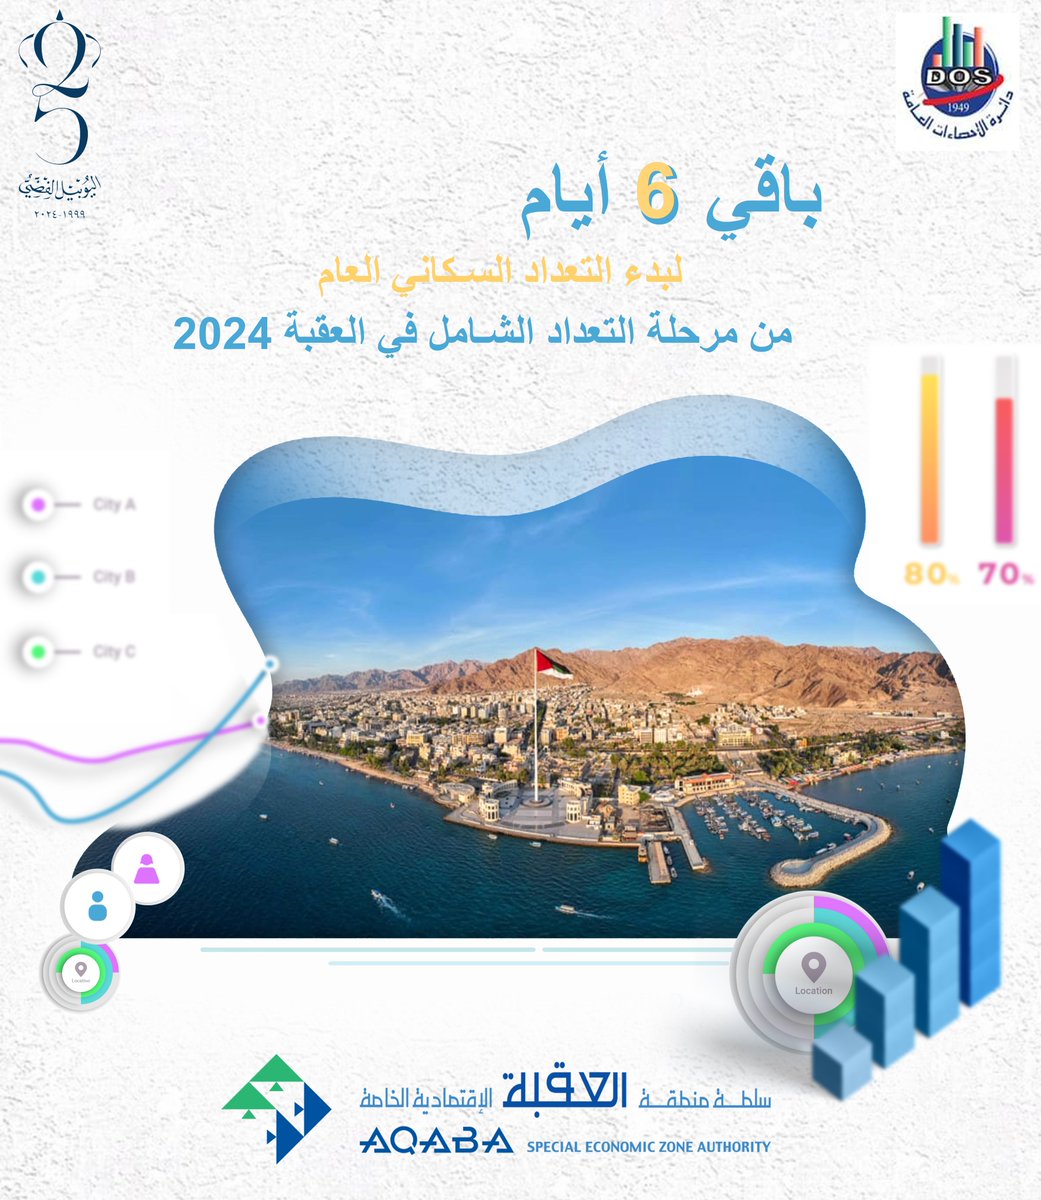 باقي 6 أيام لبدء التعداد السكاني العام في المرحلة الثالثة للتعداد الشامل في محافظة العقبة 2024